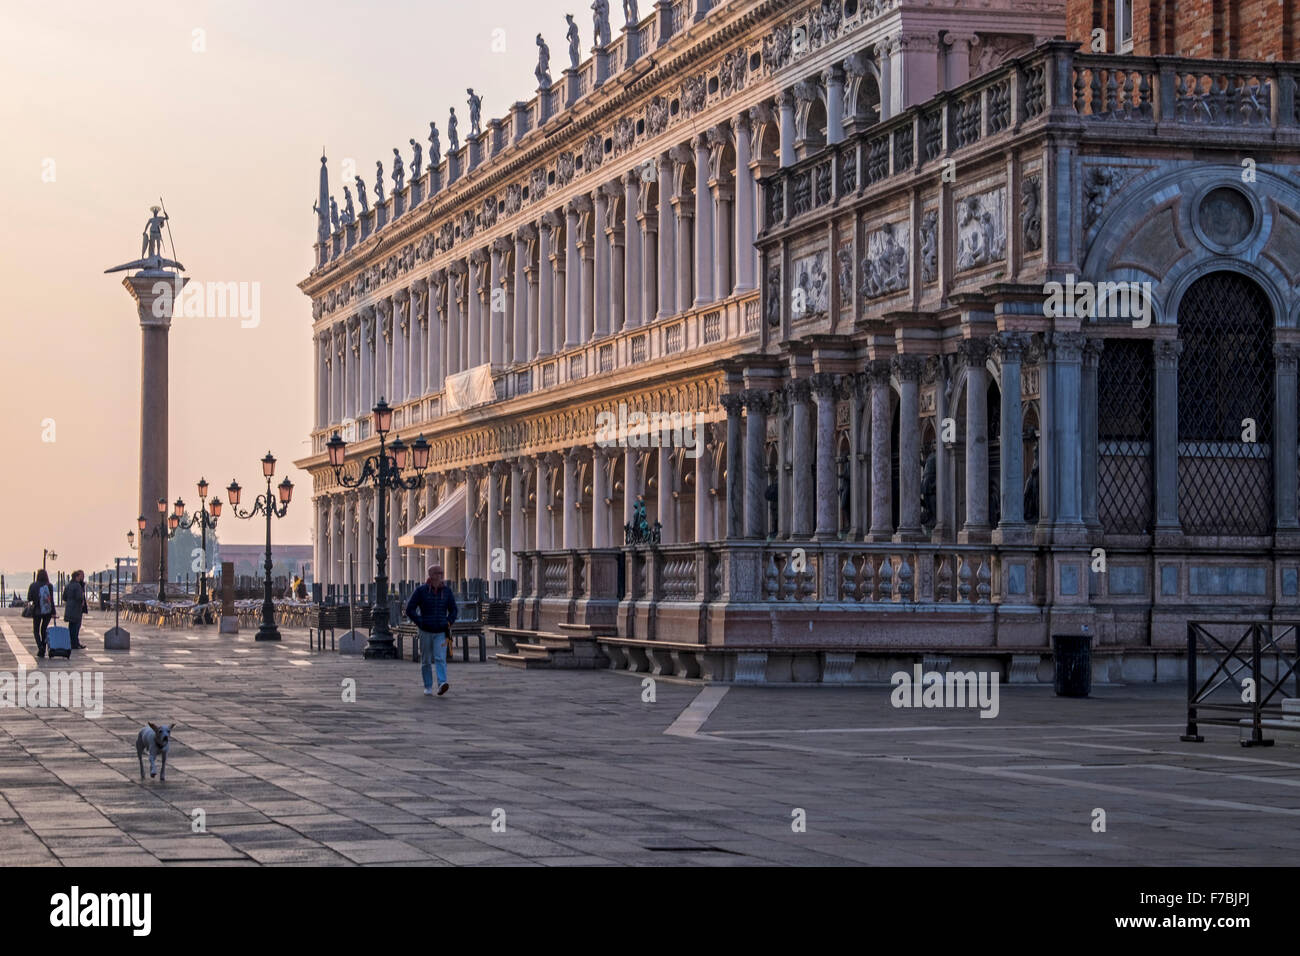 Venecia, Italia, la Piazzetta di San Marco, la Biblioteca Nazionale Marciana, Biblioteca Nacional y columna de granito de San Teodoro Foto de stock